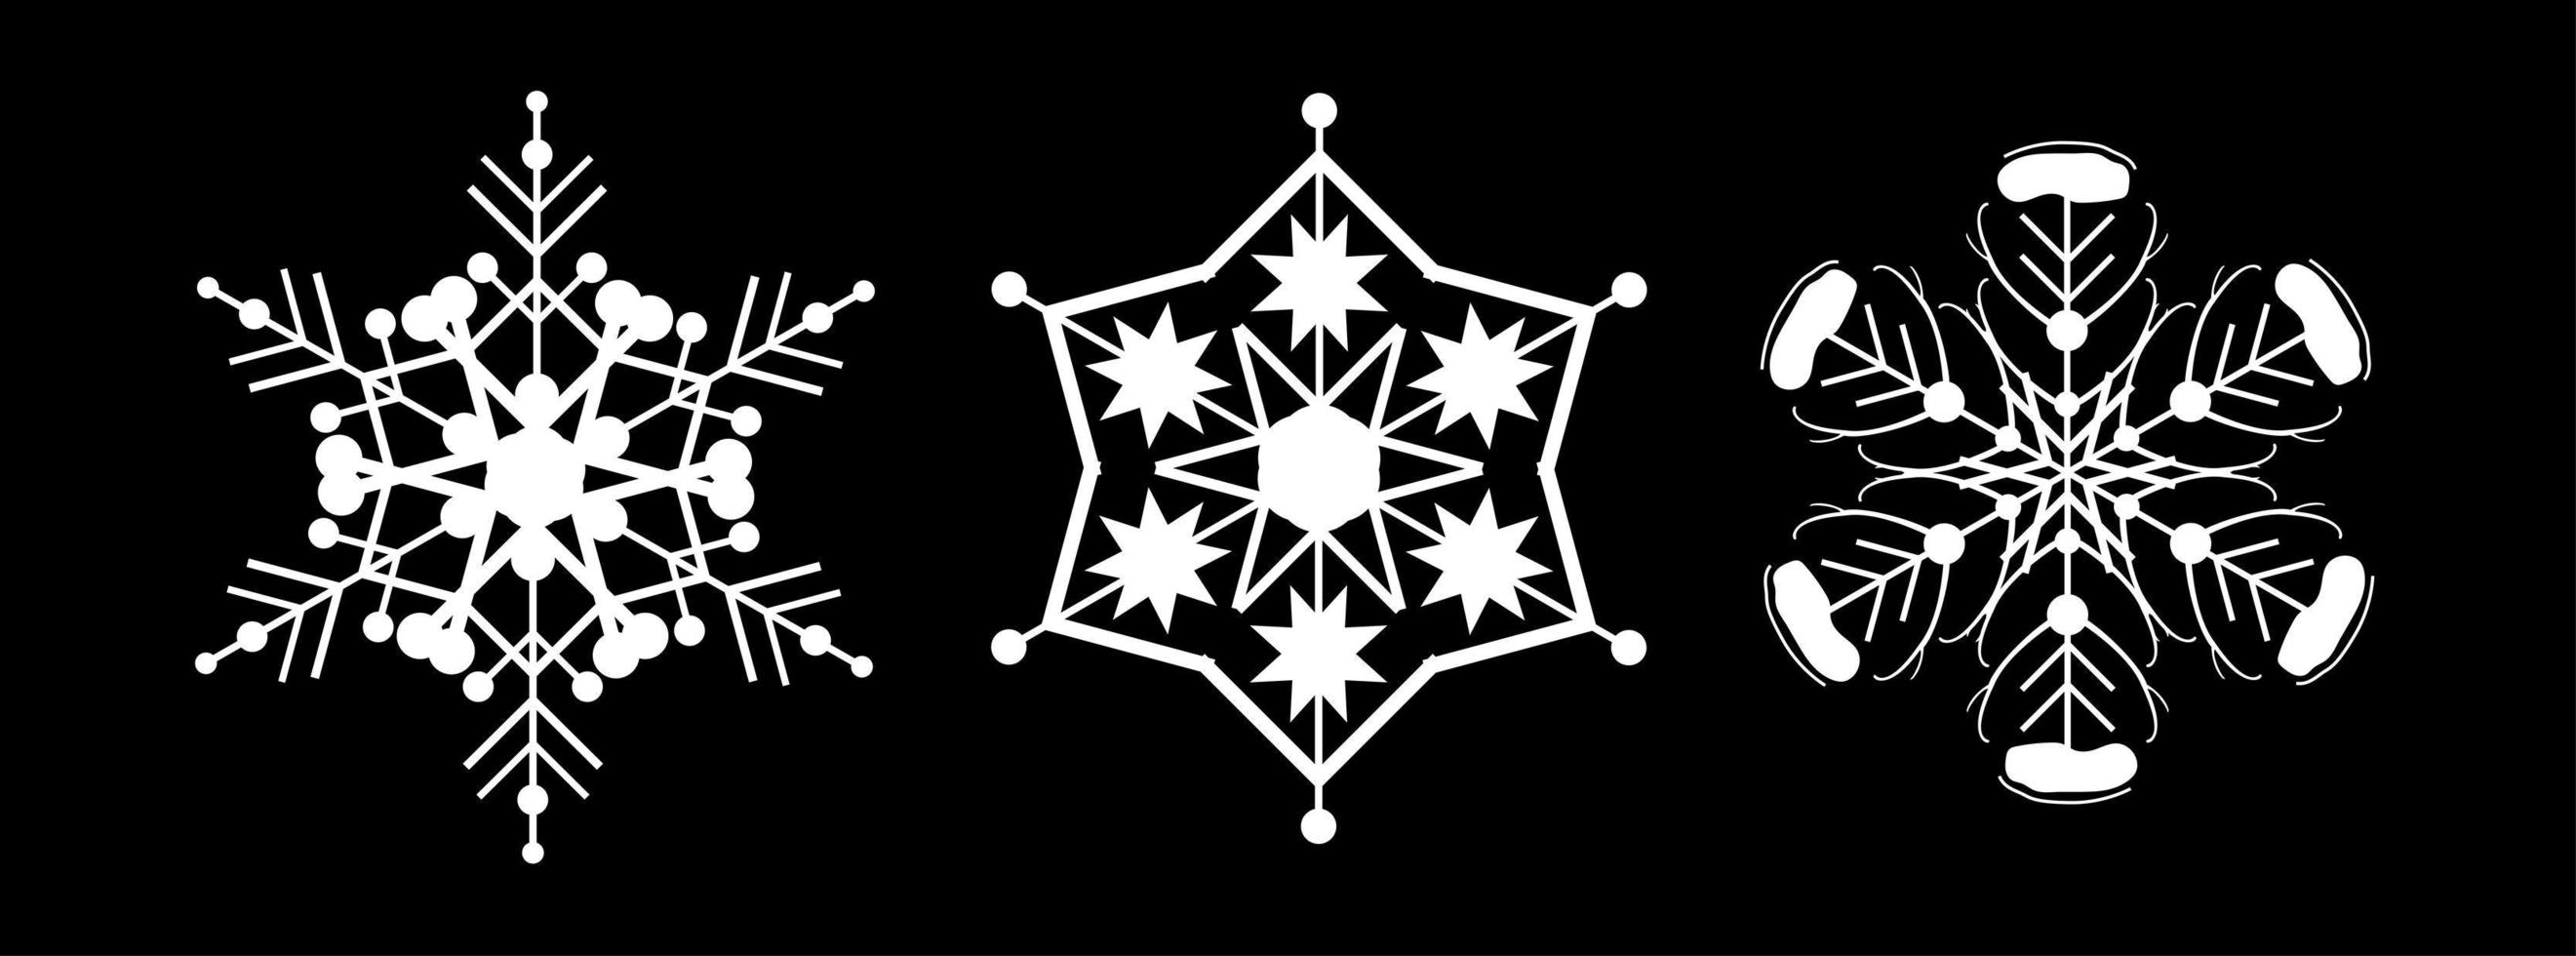 impostare il fiocco di neve bianco su sfondo nero. decorazioni per natale e capodanno design di carte, banner, siti Web, icone. elegante illustrazione lineare di vettore geometrico.